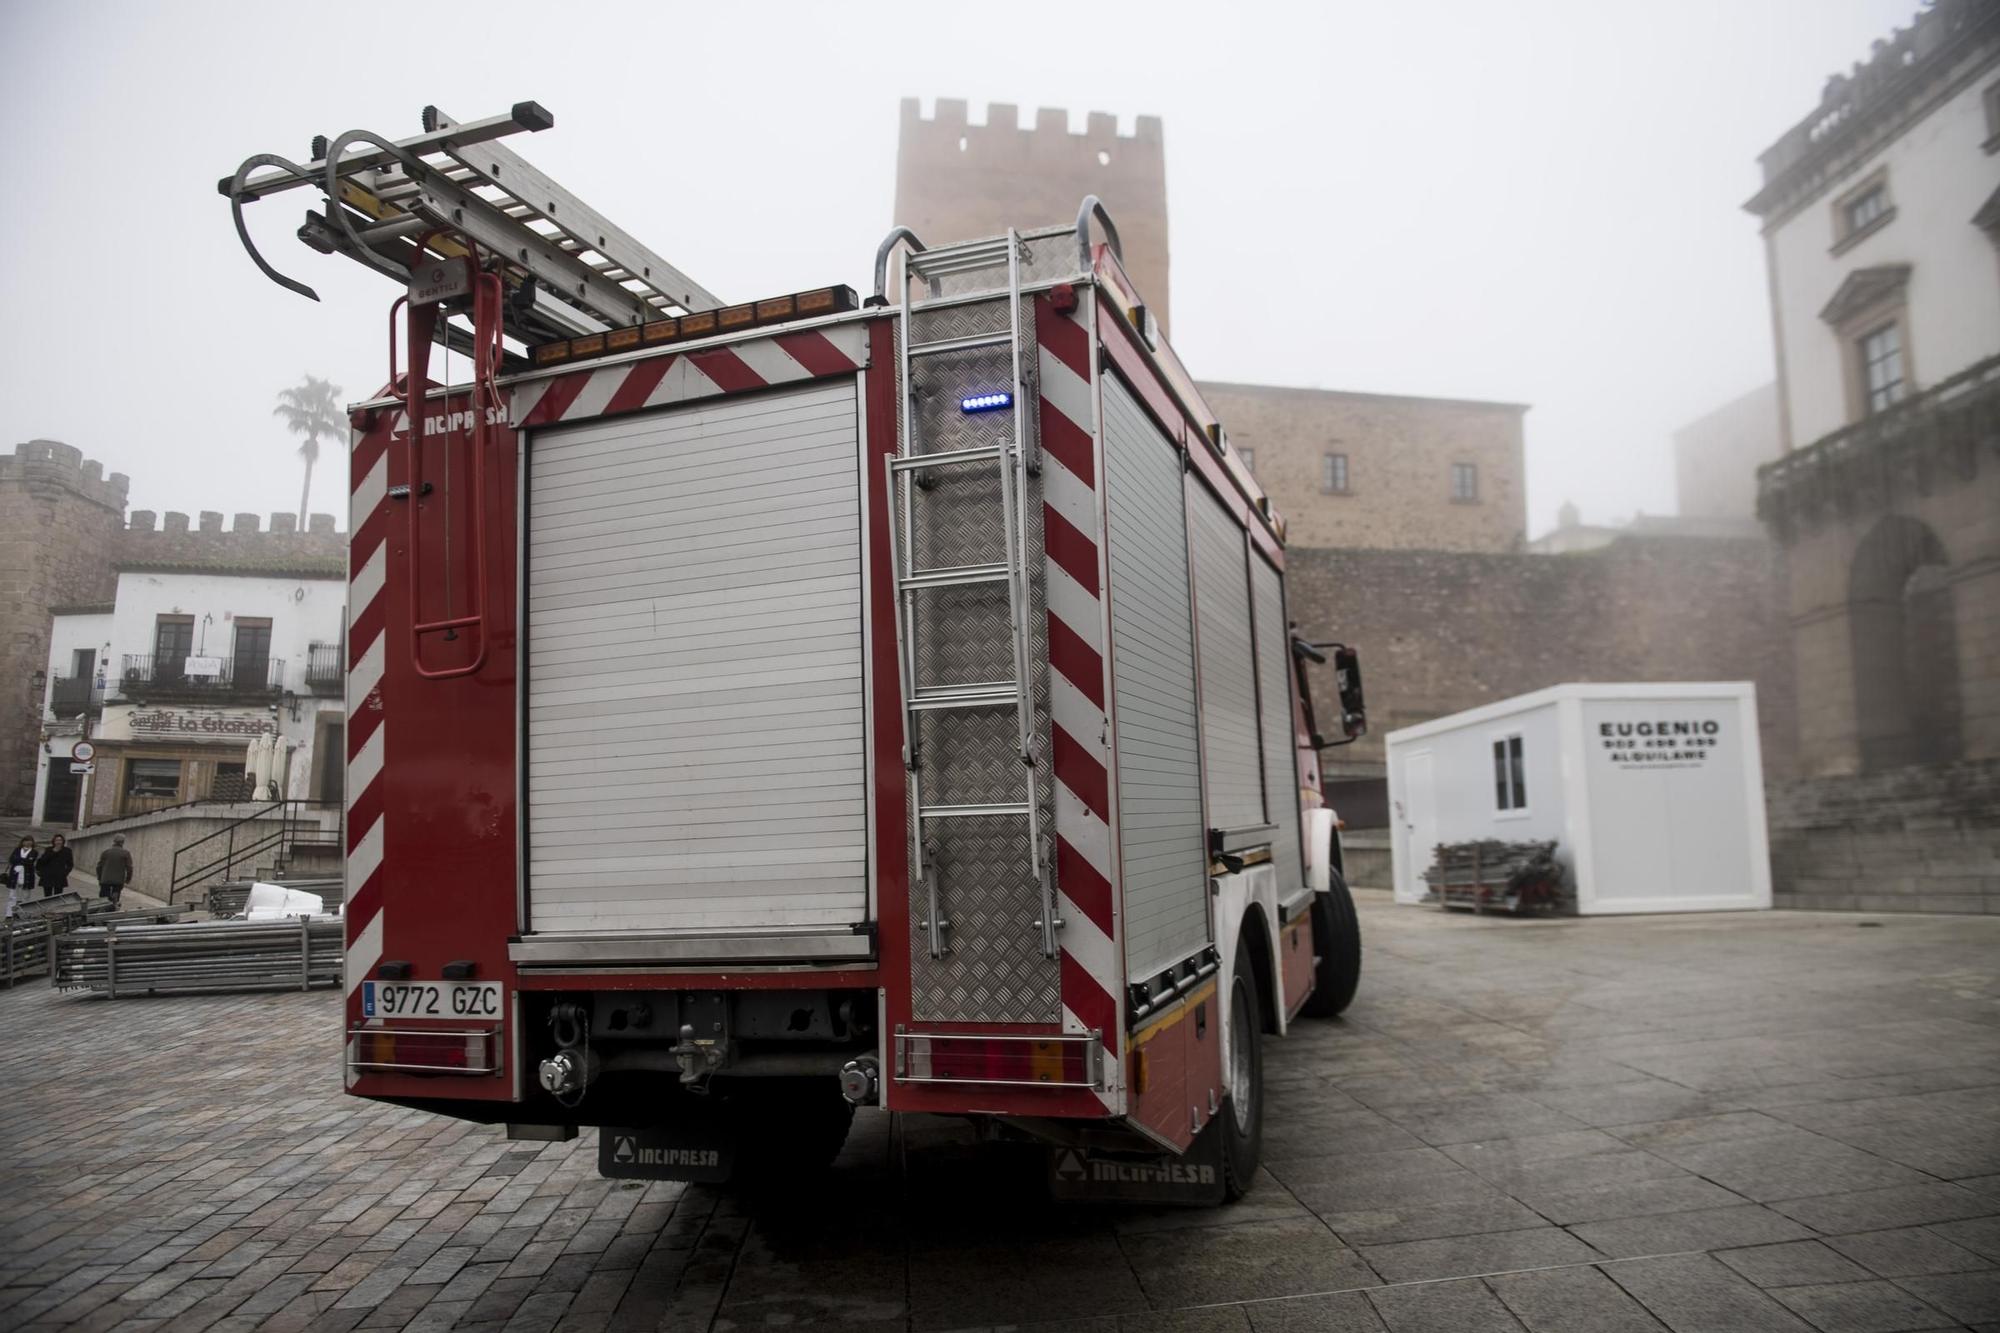 GALERÍA | Las imágenes de un simulacro de incendio en la plaza Mayor de Cáceres